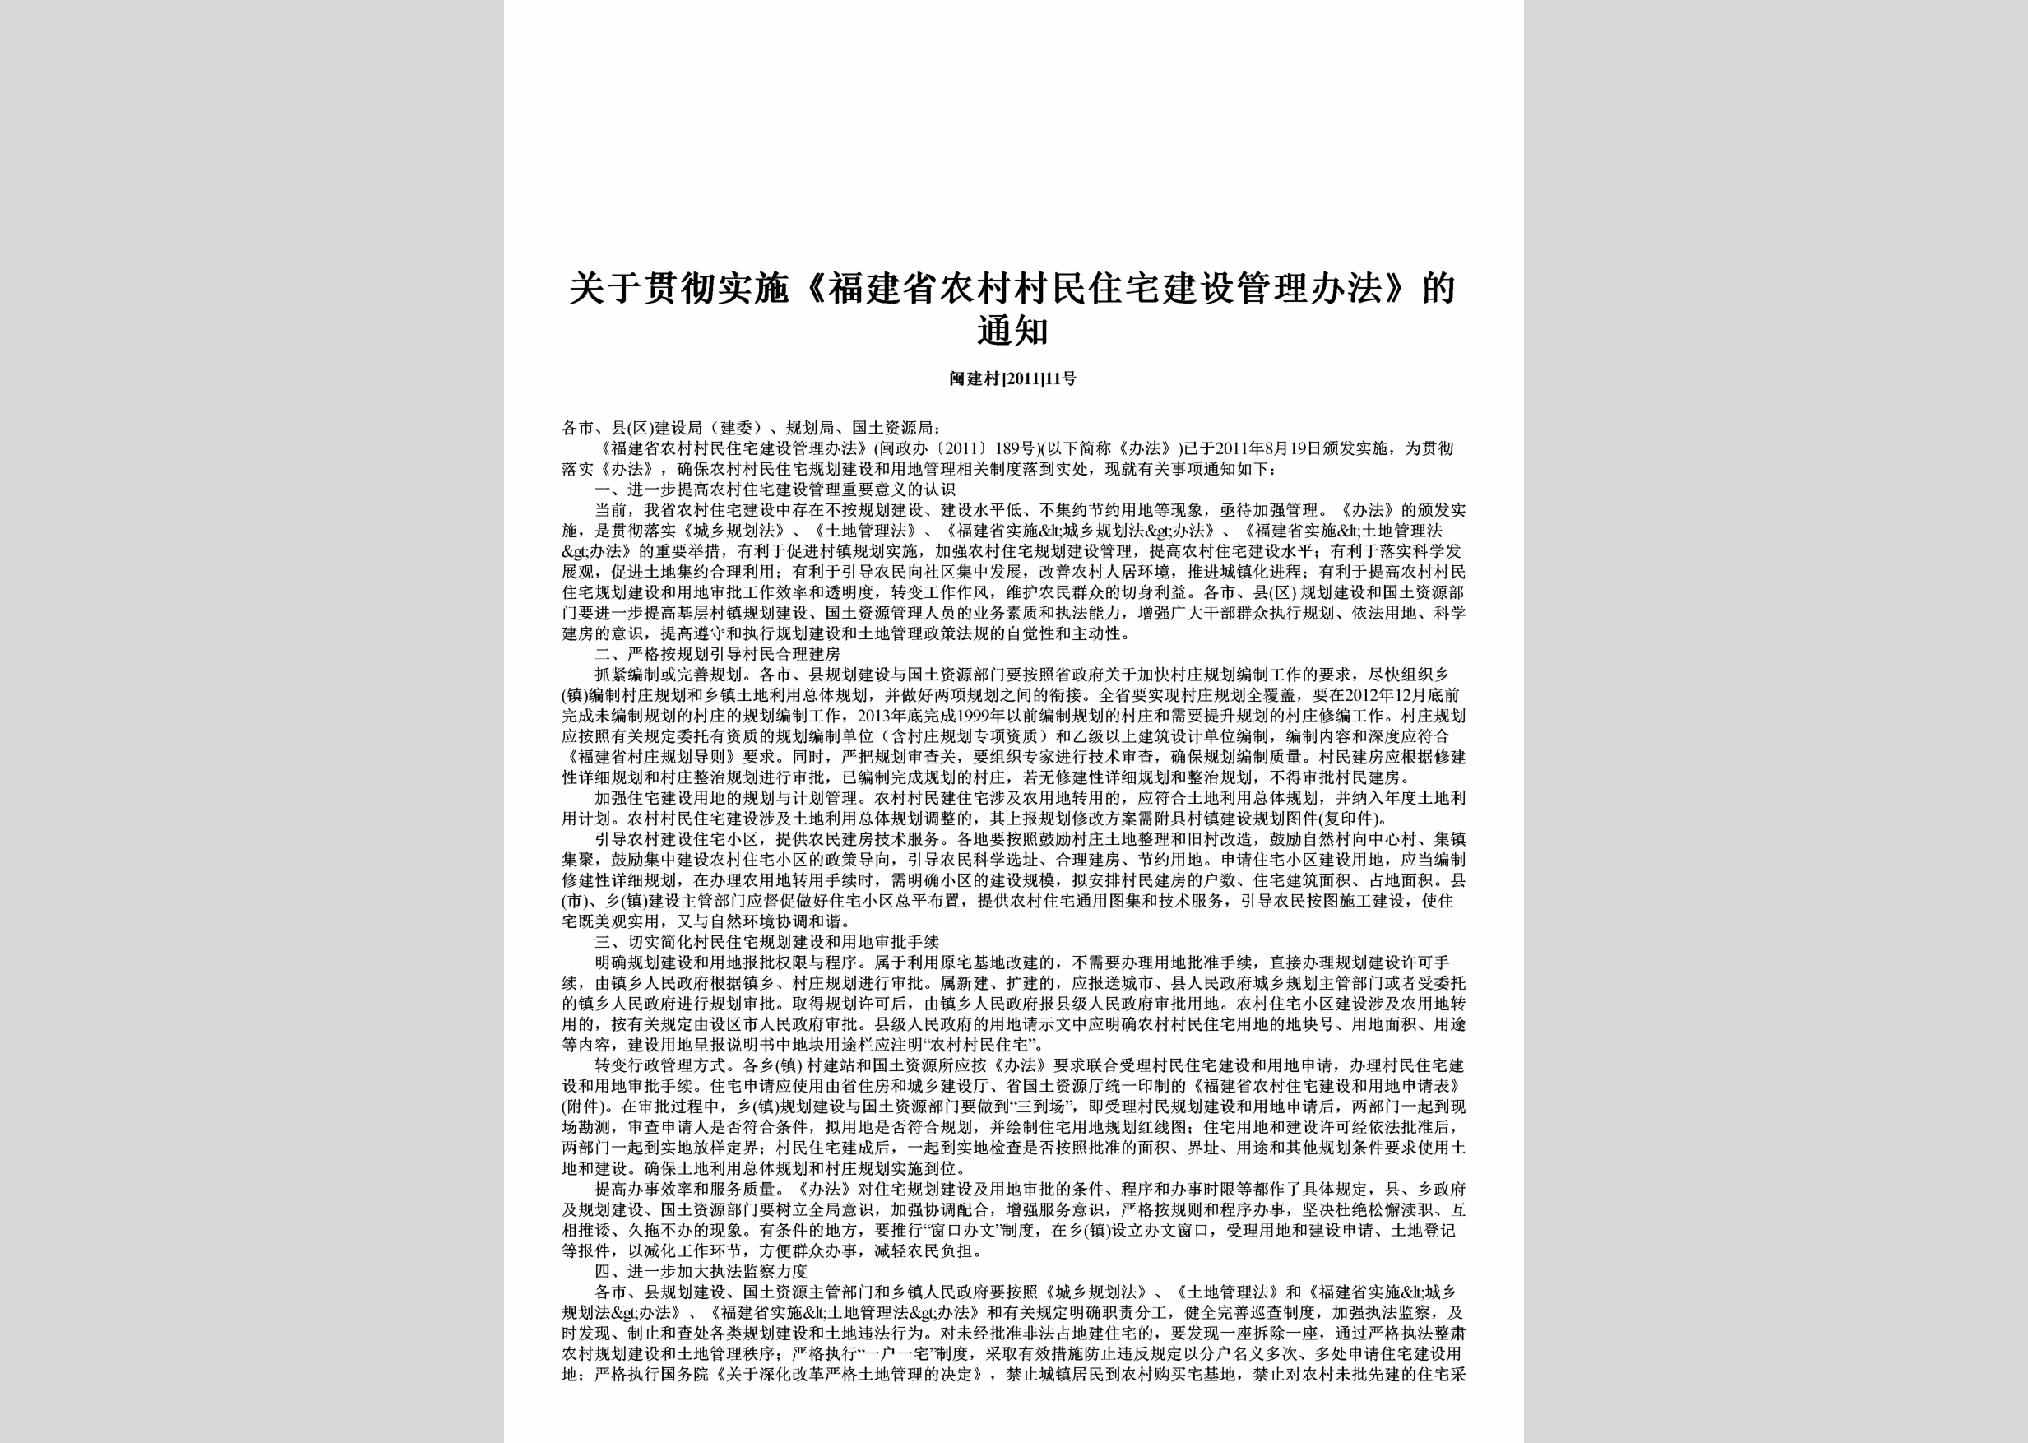 闽建村[2011]11号：关于贯彻实施《福建省农村村民住宅建设管理办法》的通知